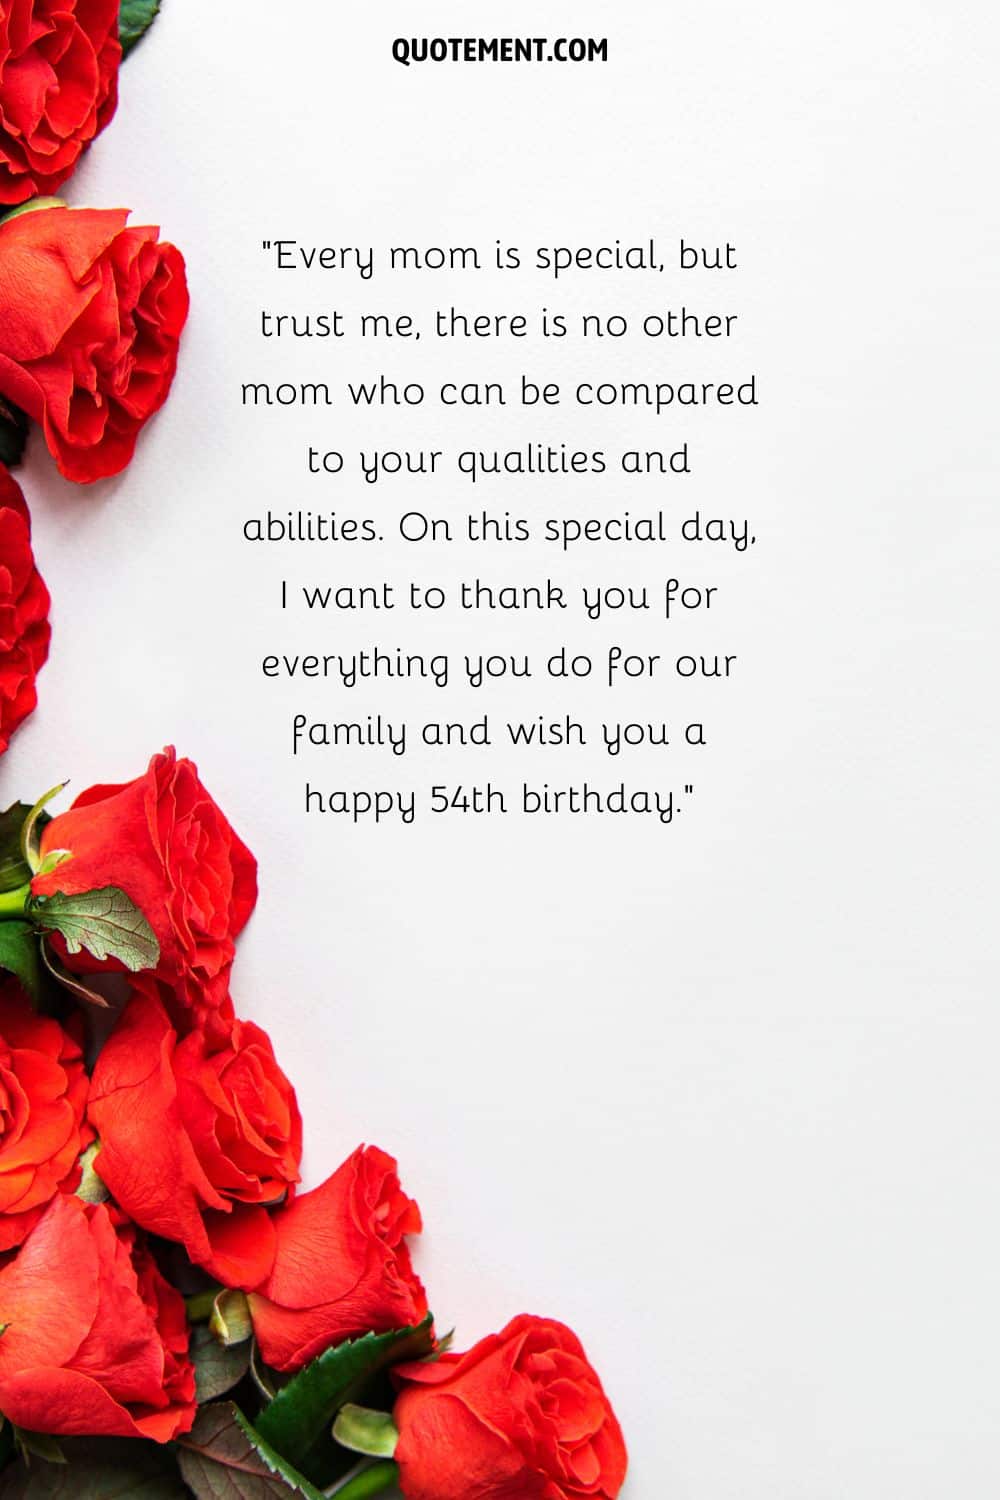 Mensaje de cumpleaños para el 54 cumpleaños de una mamá y rosas rojas a la izquierda